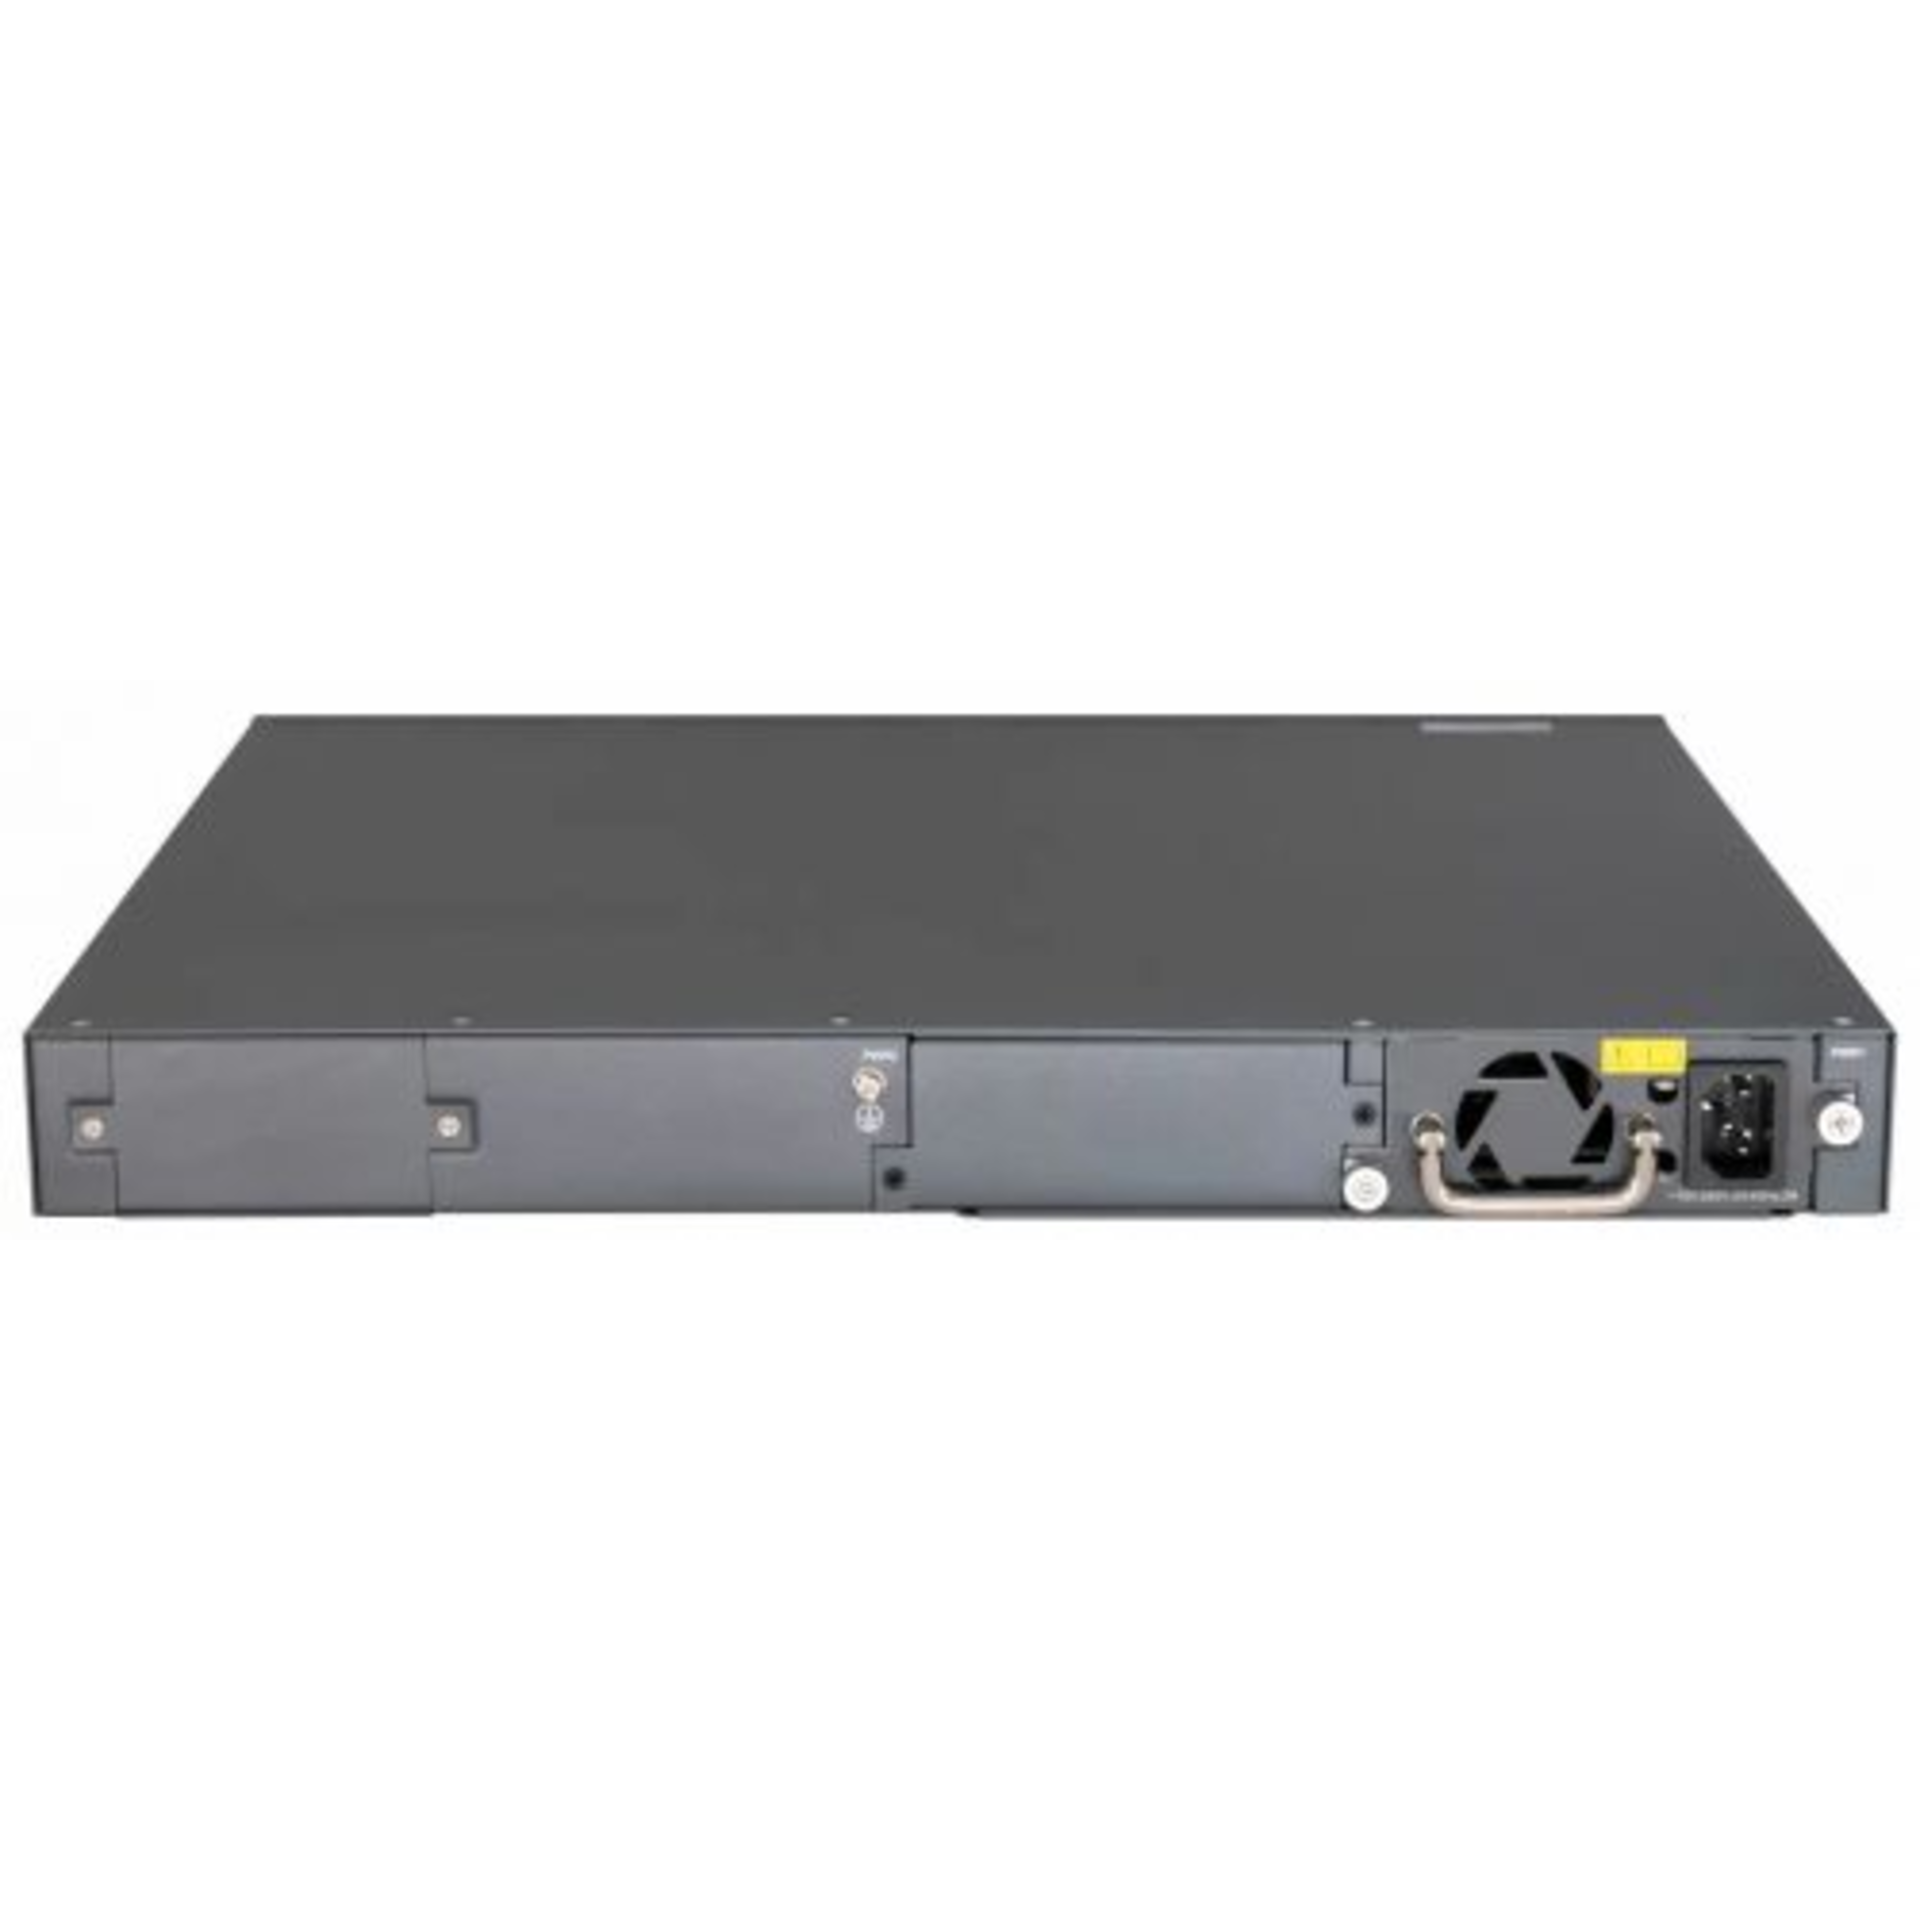 Управляемый коммутатор уровня 3 BDCOM S3900-48T6X-2DC, 48x 10/100/1000Base-T, 6x 1/10GE SFP+, Hot Swap БП 1+1, в комплекте 2x PSU ~36-72VDC